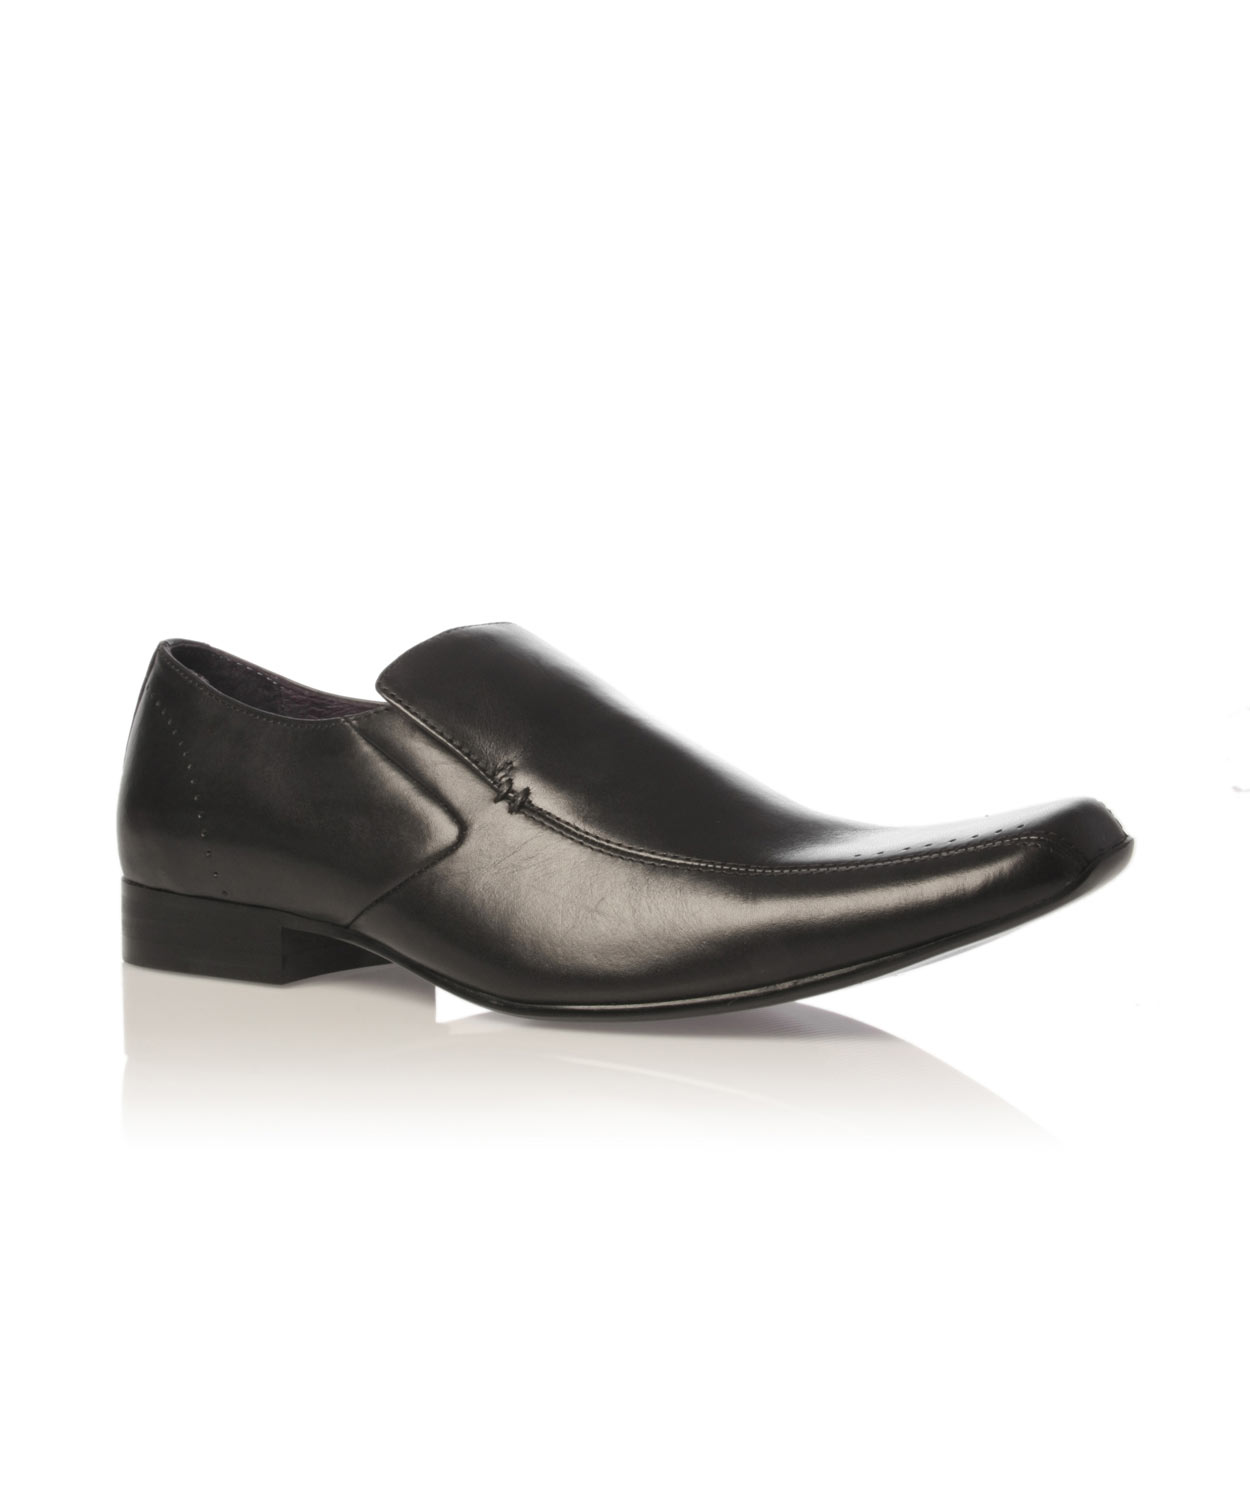 Lyst - Kg By Kurt Geiger Regent Formal Shoes in Black for Men